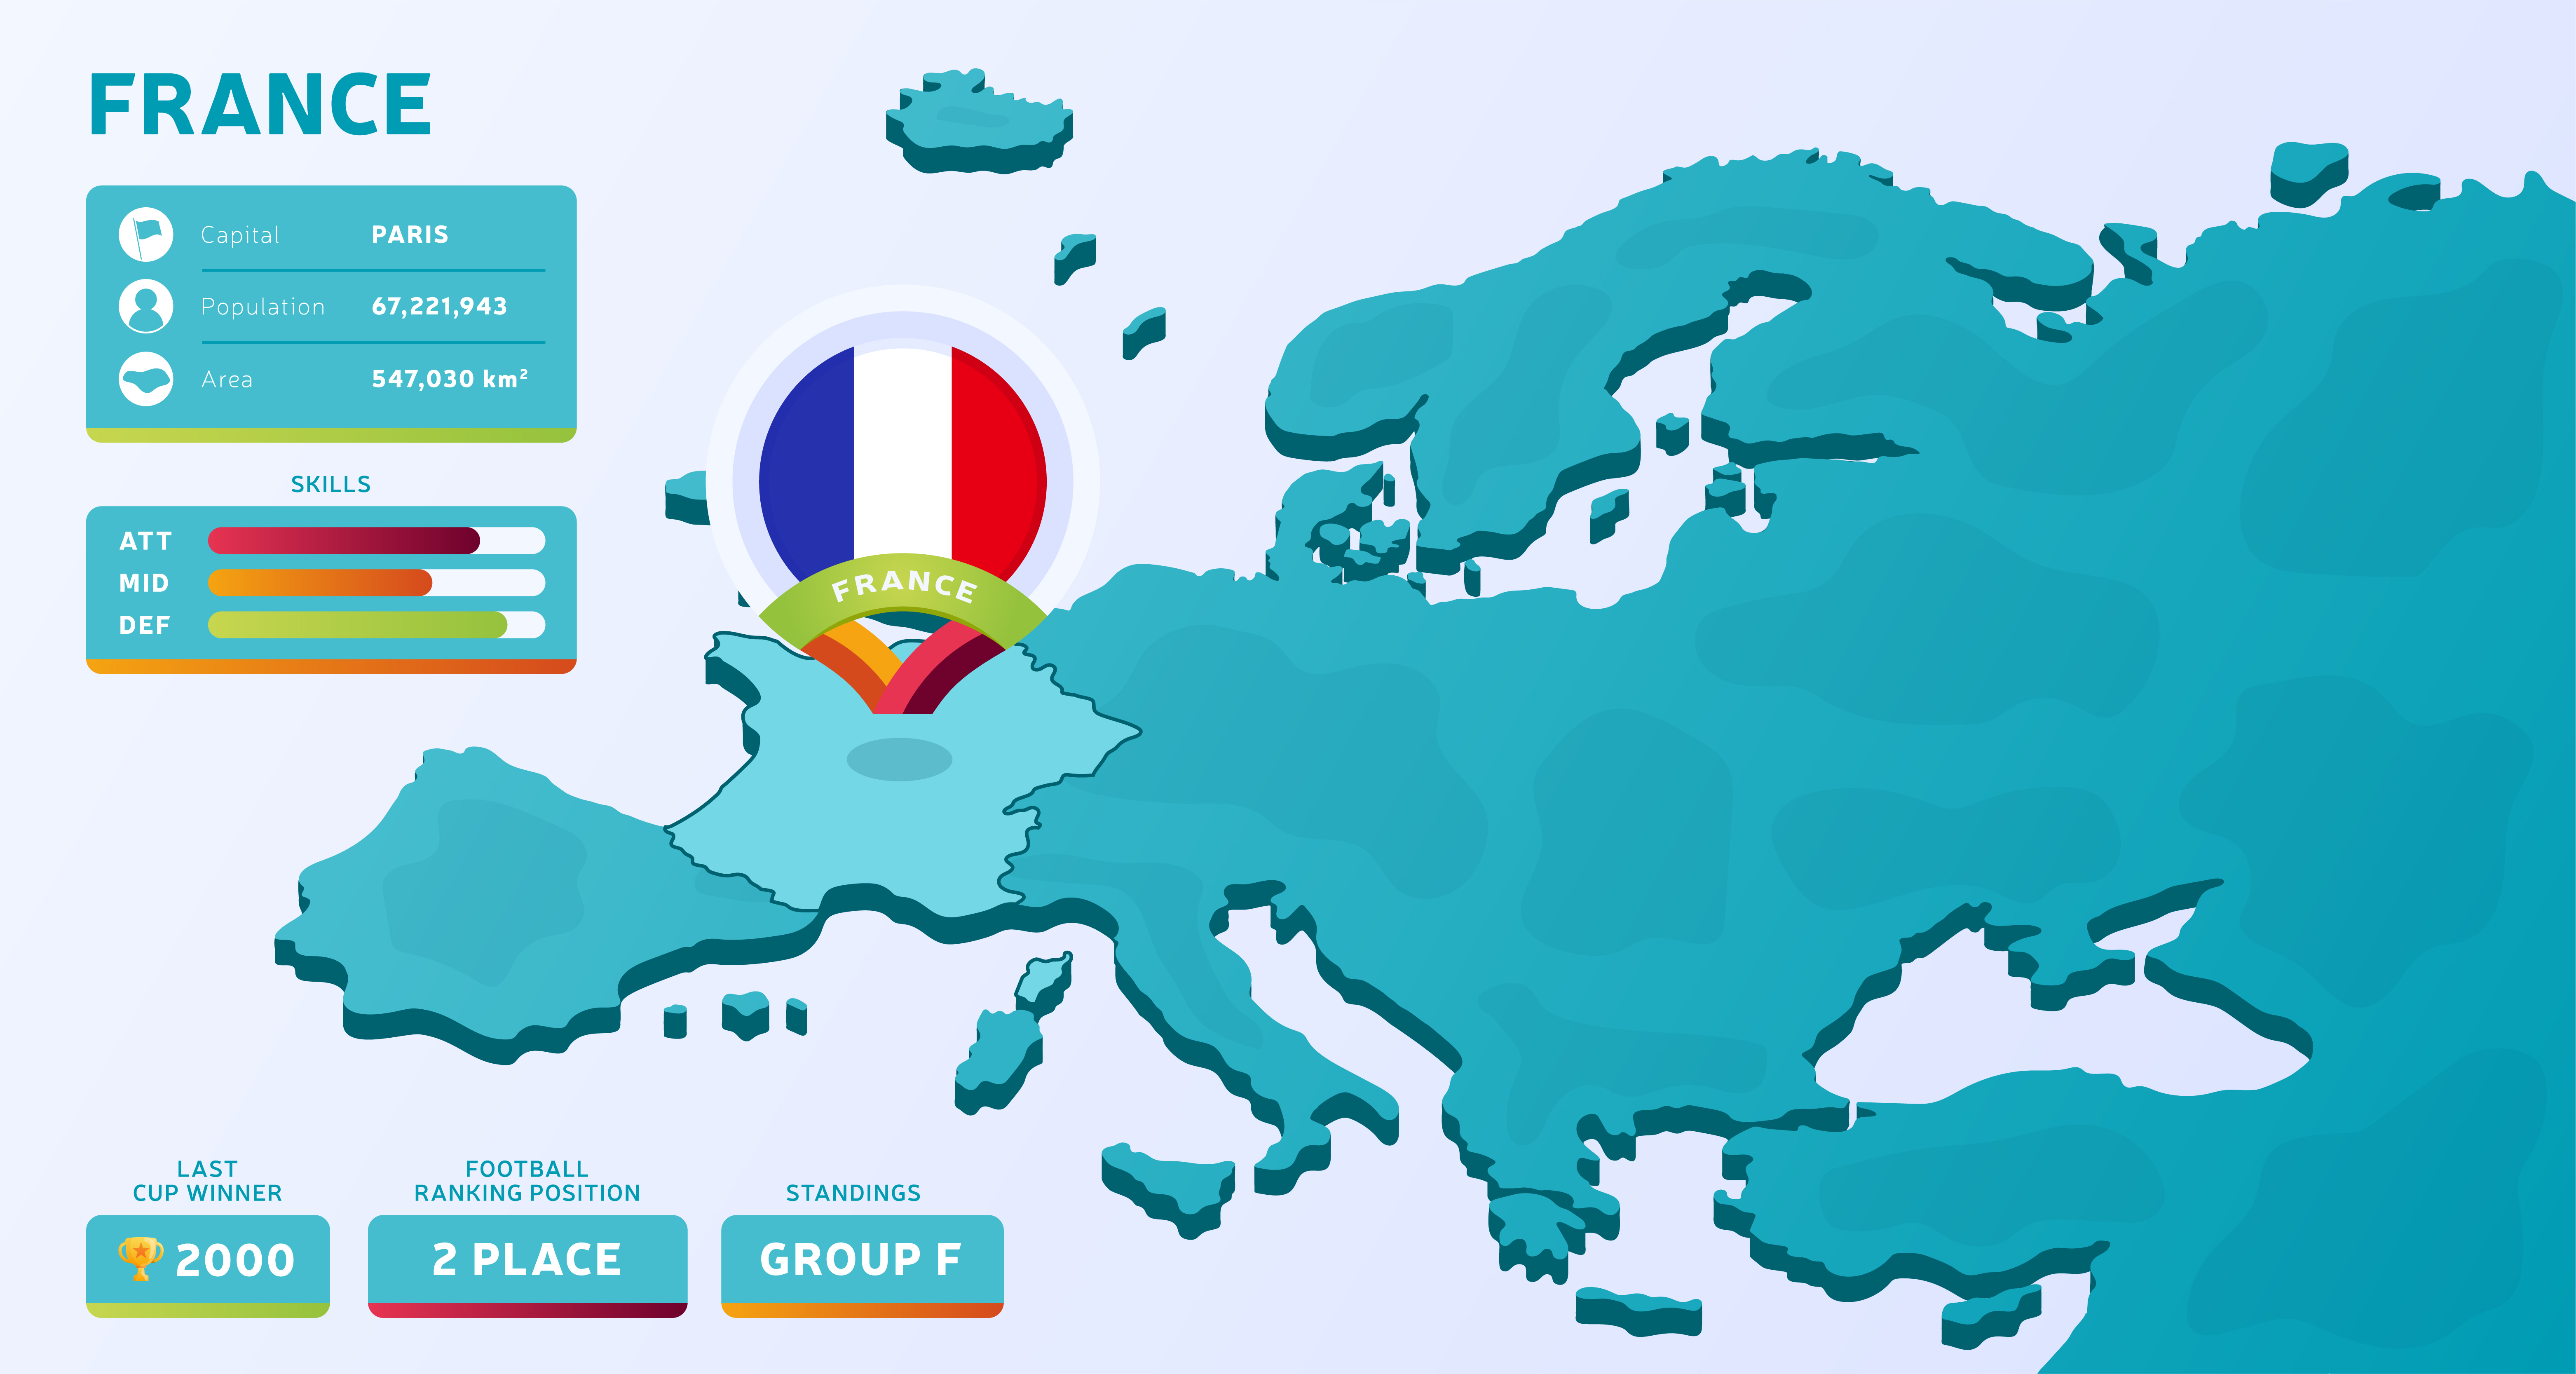 Fr страна. Карта Европы 2020. Франция инфографика. Инфографики о Франции.